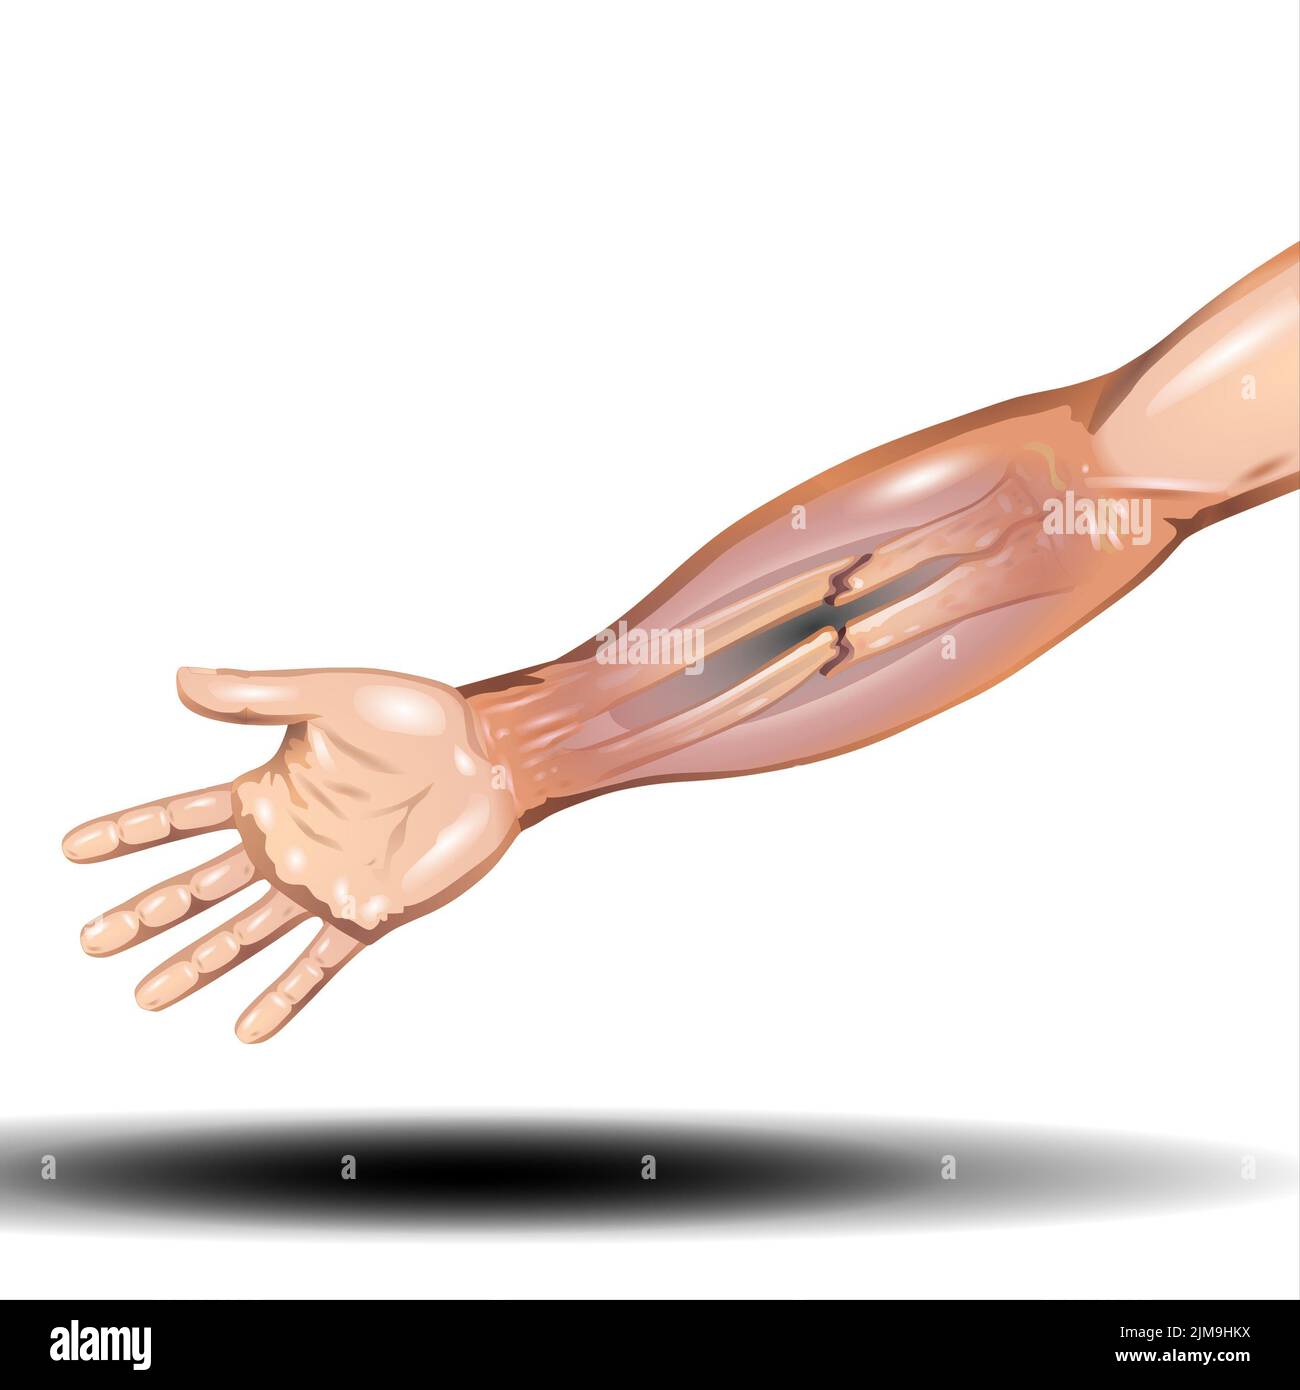 Fracture de l'os de la main - fracture du rayon distal et fracture du bras types d'os anatomie - Illustration vectorielle sur fond blanc Banque D'Images